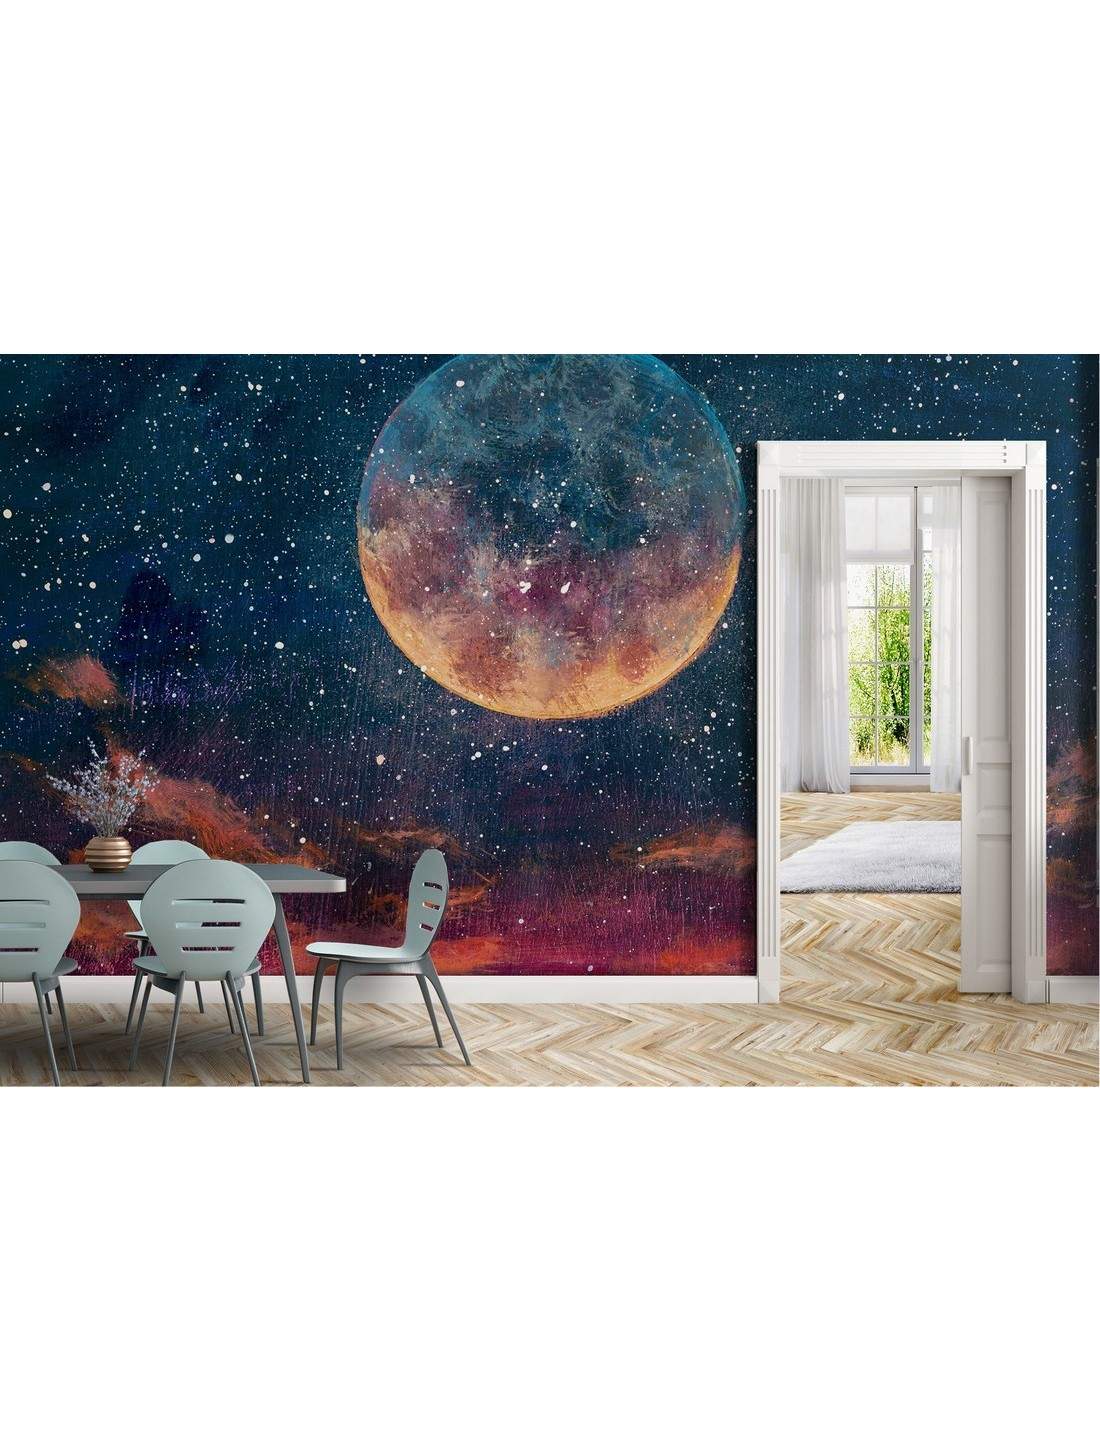 Carta da parati universo luna con stelle nel cielo e adesivi murali